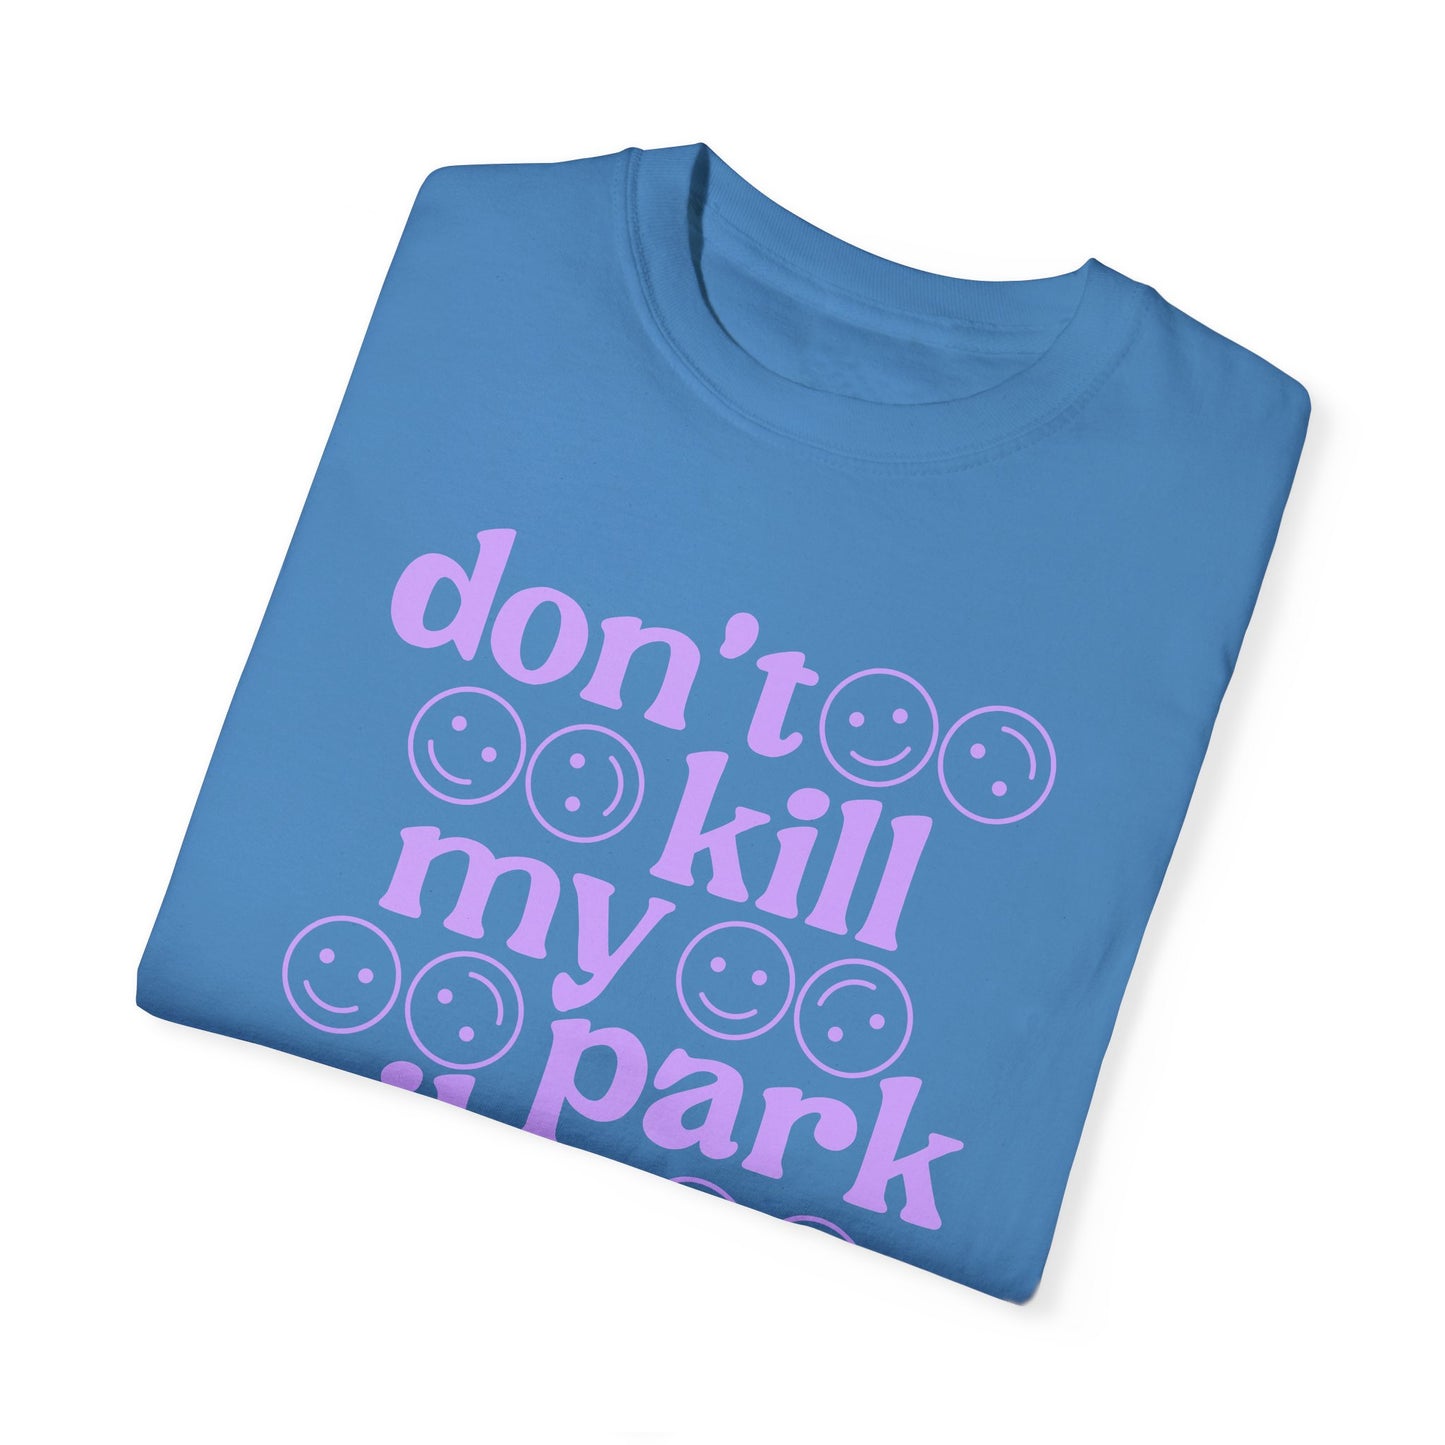 Don't kill my park vibe - Tee